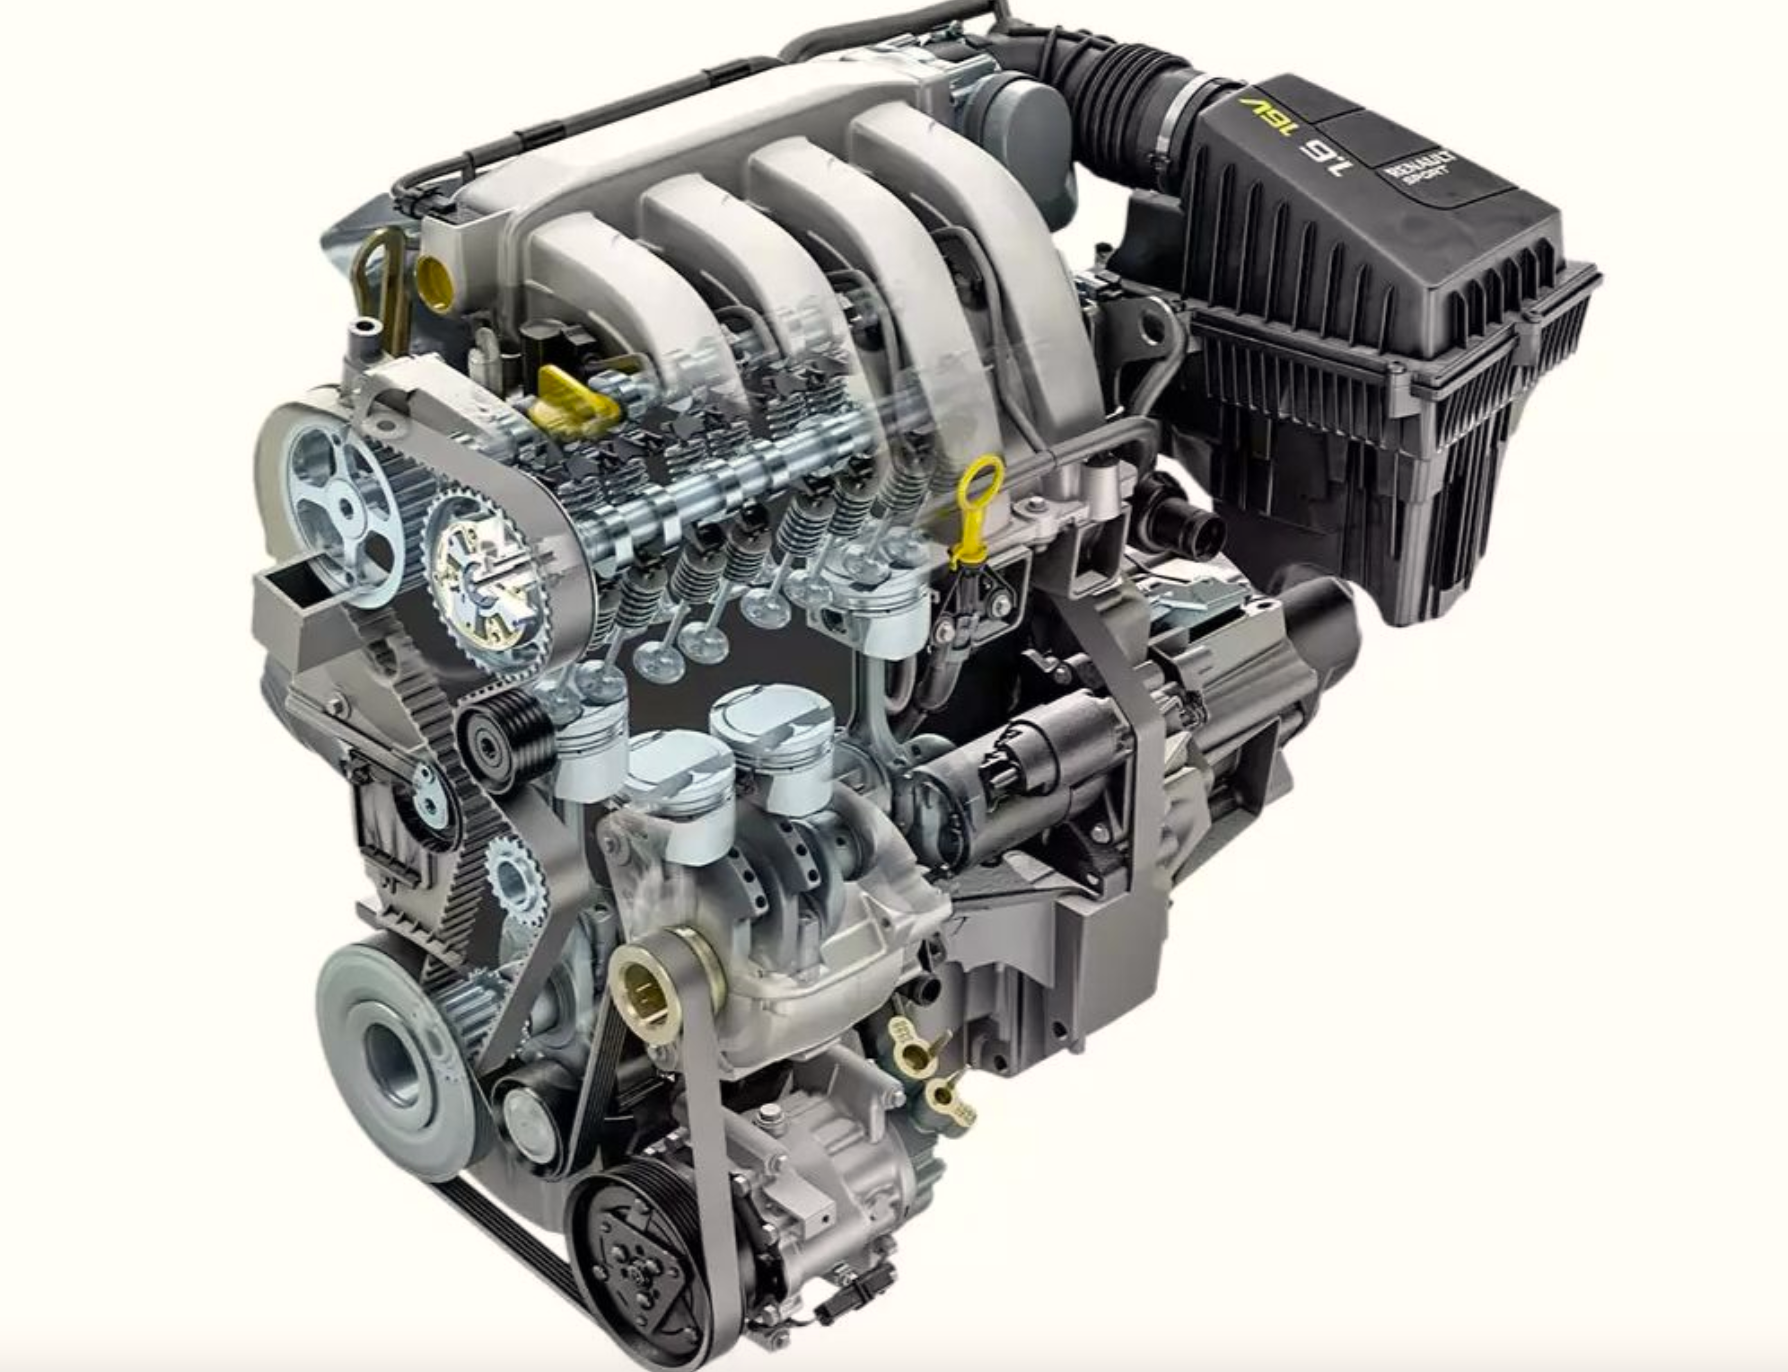 Мотор Рено Логан 1.6 16. Двигатель Renault k4m 1.6 16v. Двигатель к4м Рено Логан. Двигатель Renault 1.6 (k4m. Модели двигателей рено